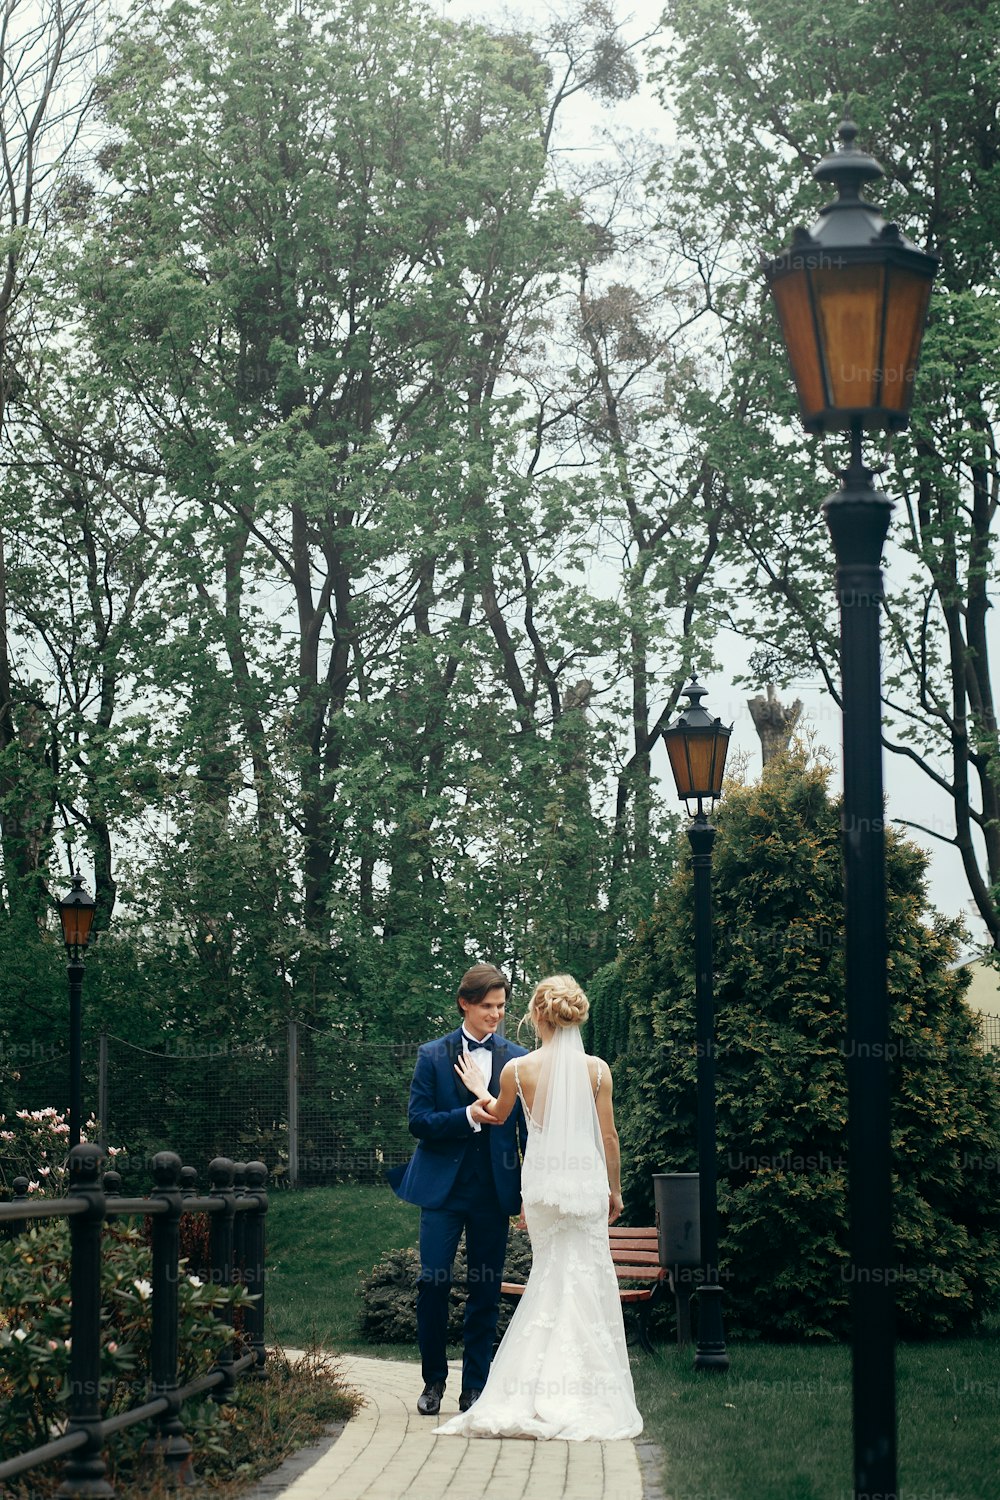 Stilvolles Brautpaar tanzt im Park.  Glückliches Luxushochzeitspaar, das zwischen Bäumen spazieren geht und lächelt. Mann im blauen Anzug und Frau im weißen Kleid an der Rezeption im Freien